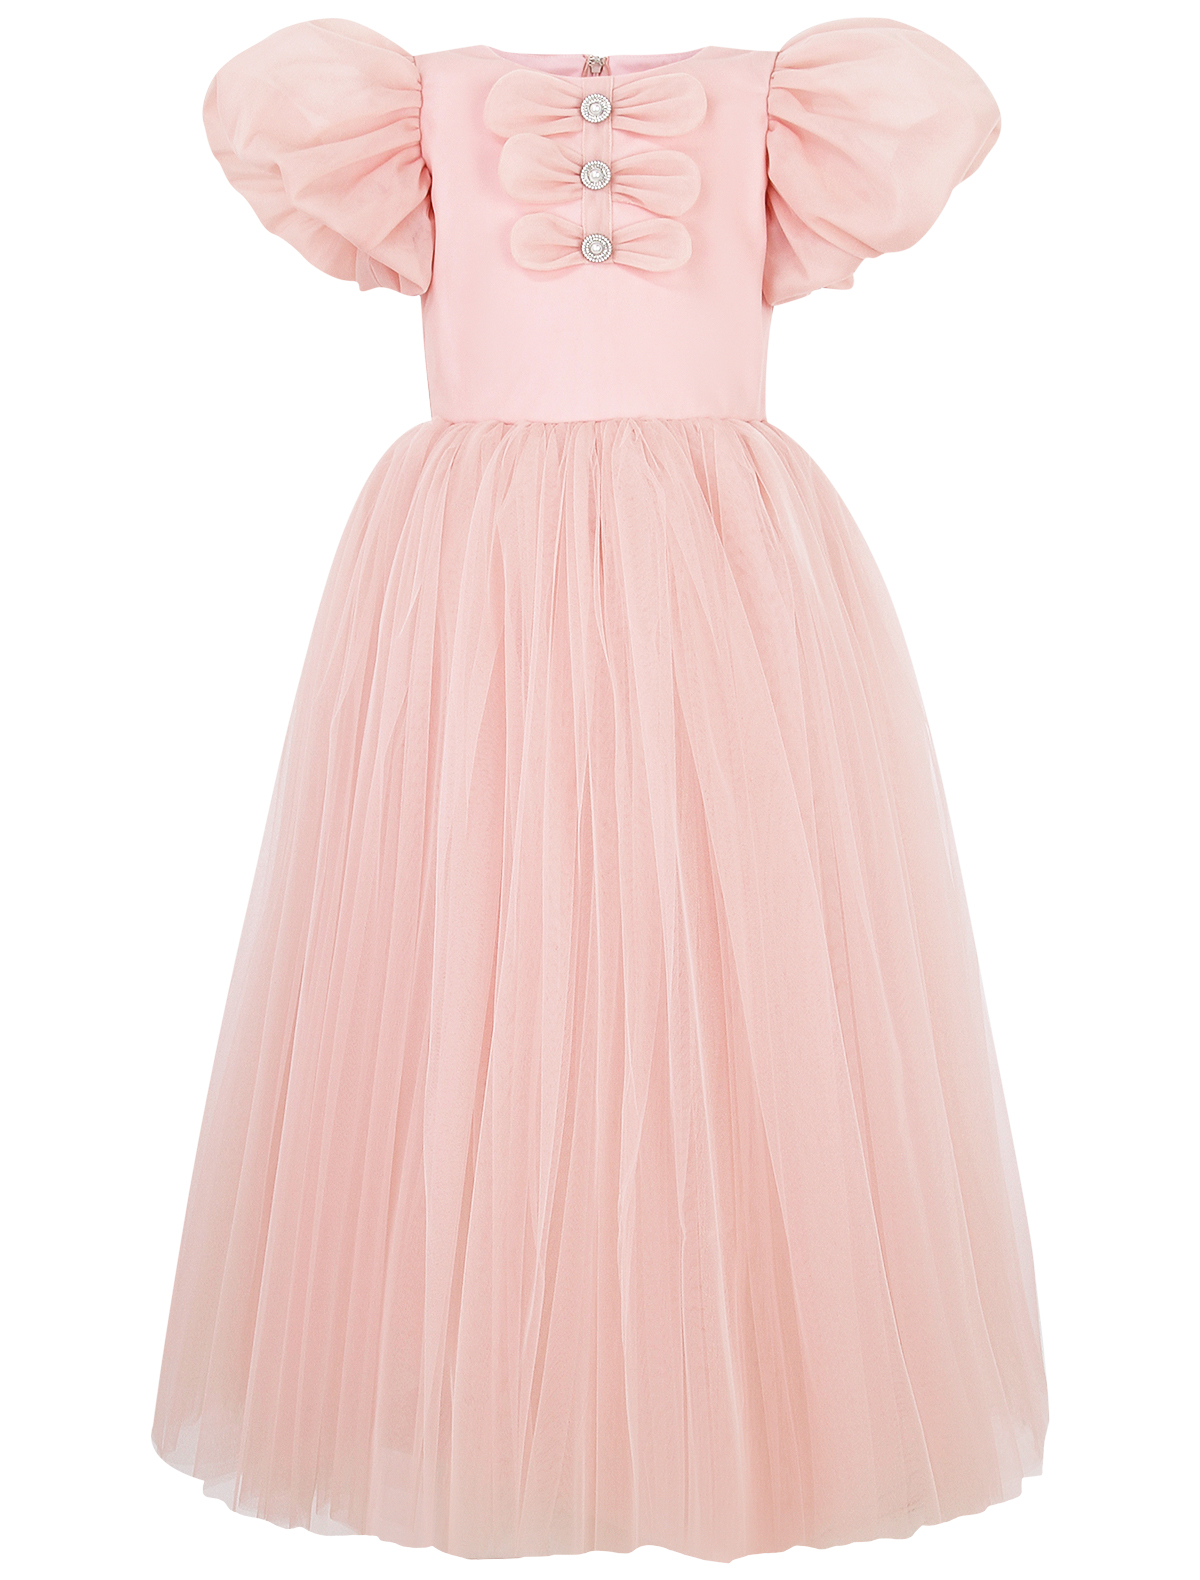 Платье SASHA KIM 2672708, цвет розовый, размер 7